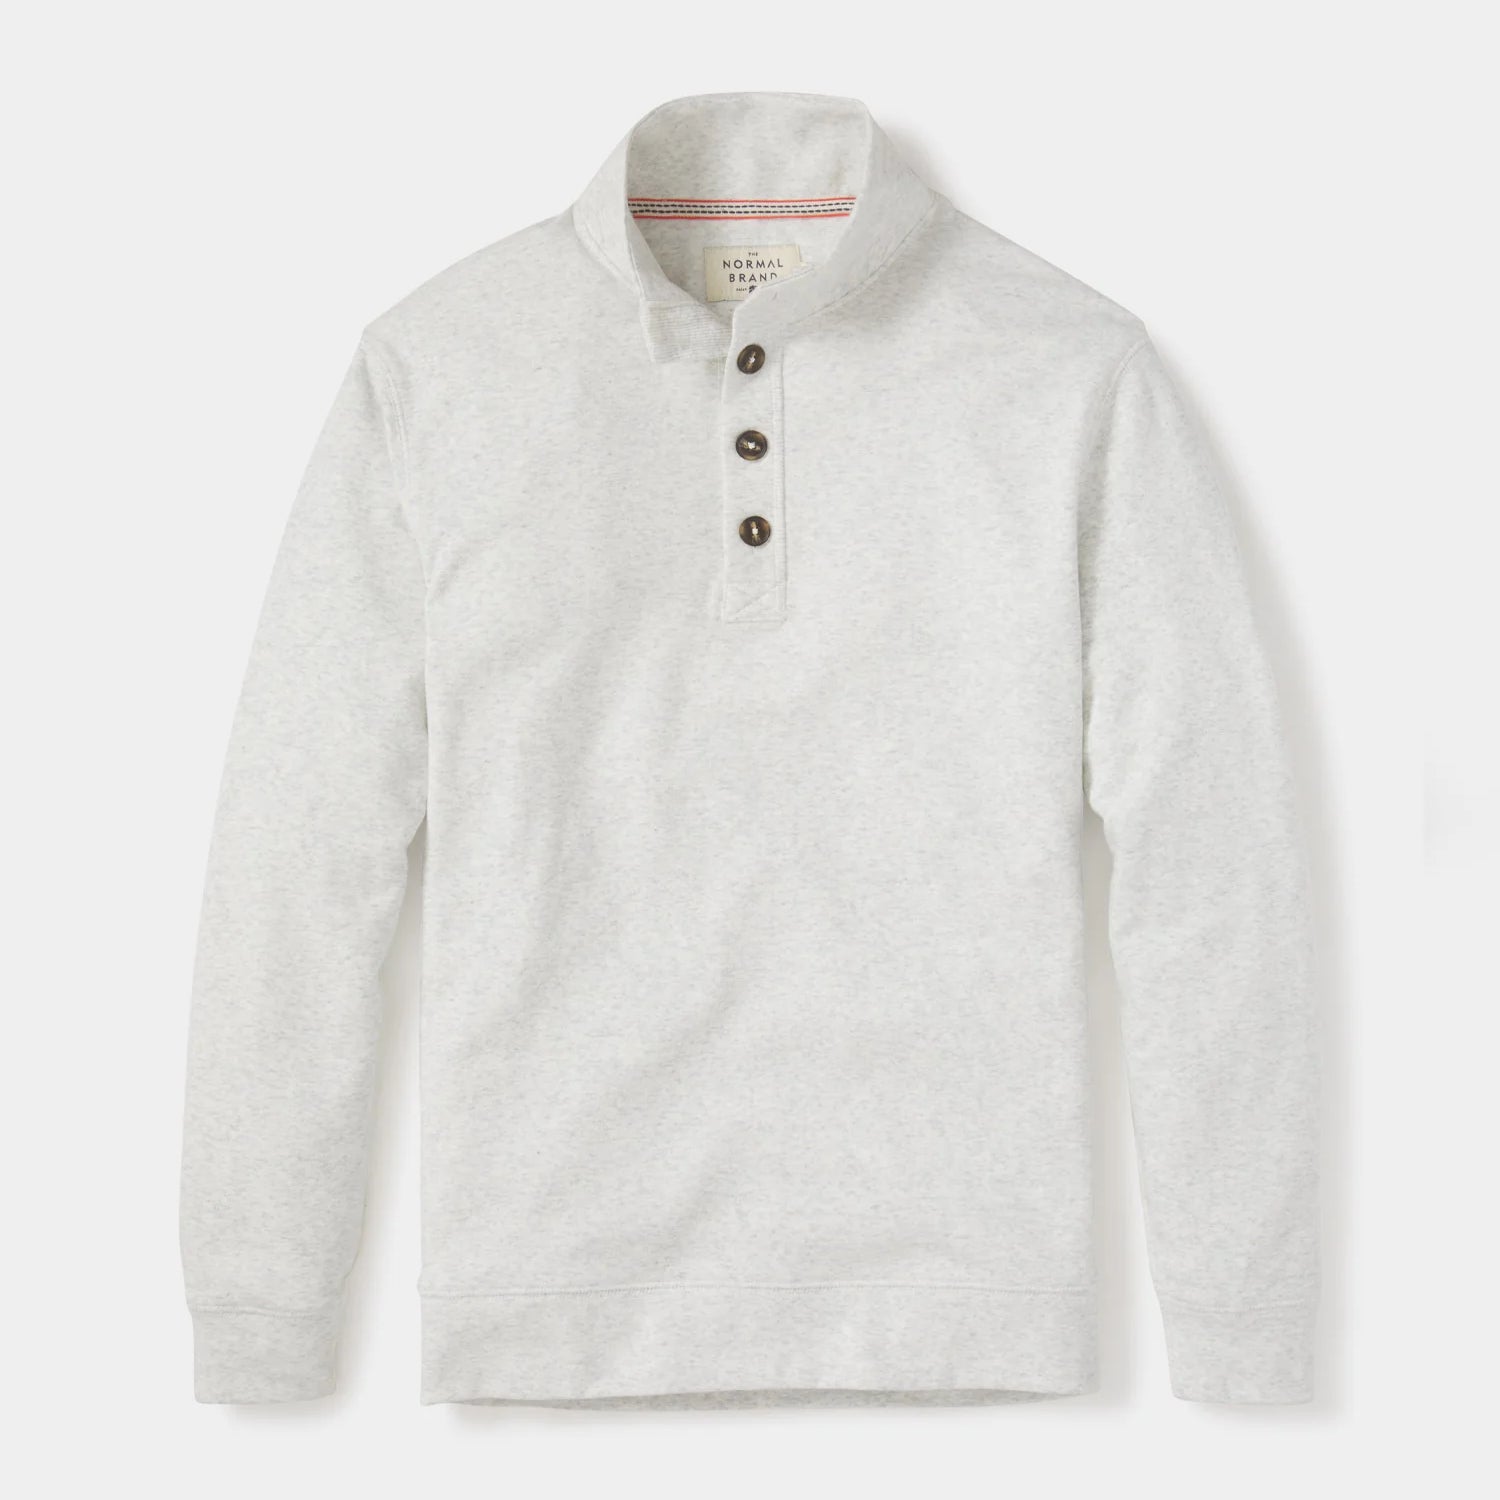 Normal Brand Puremeso Button Popover - Stone - 1 - Tops - Fleece Sweaters